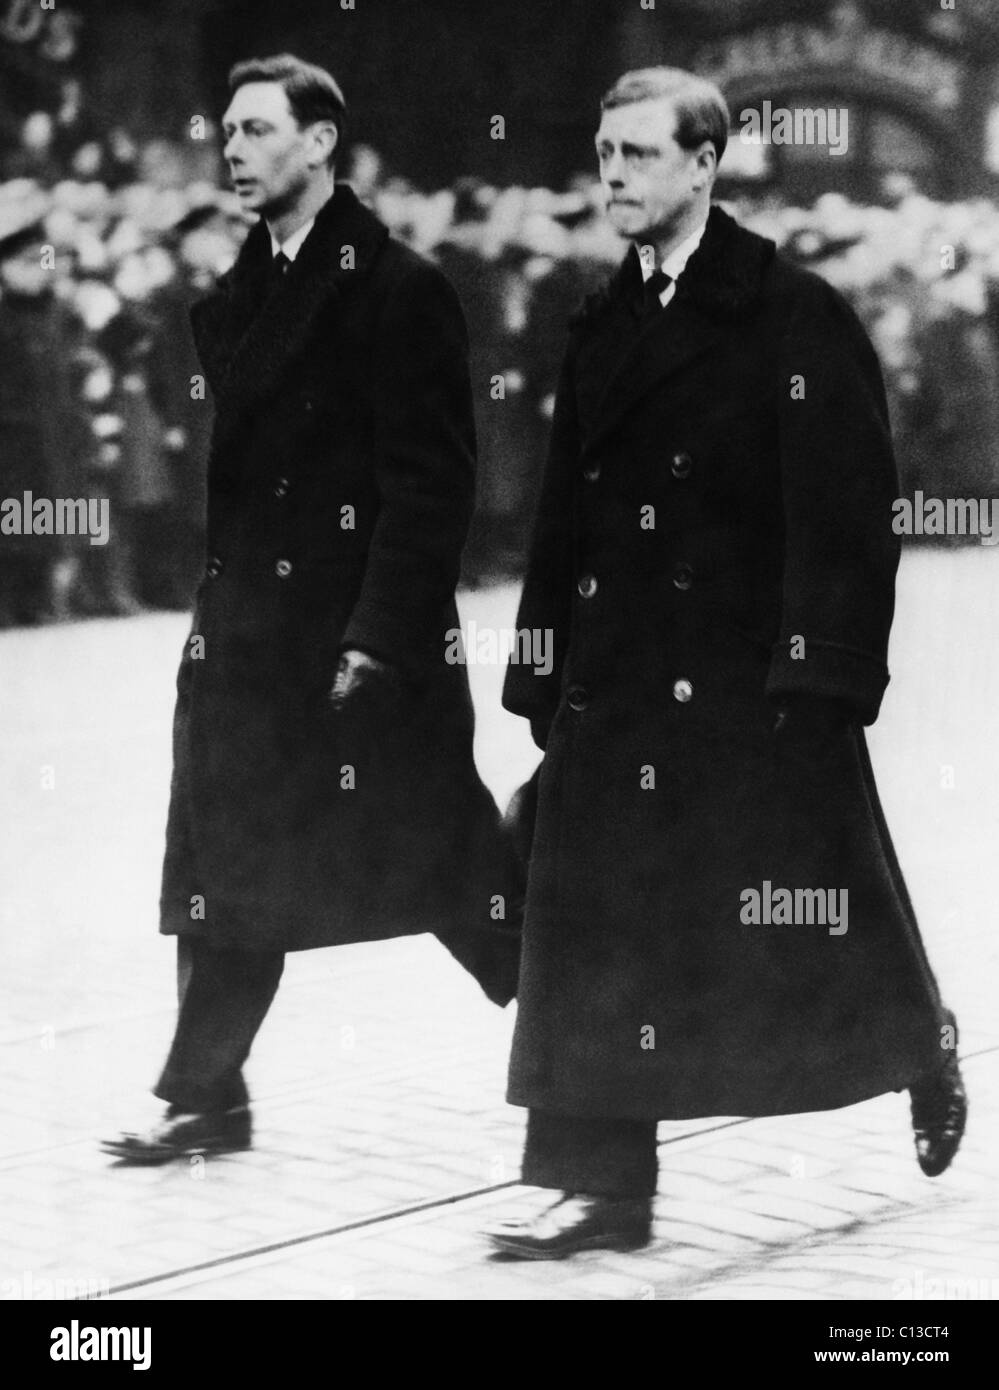 La famille royale britannique. Le Prince Albert, duc de York (futur roi George VI d'Angleterre) et le roi Édouard VIII d'Angleterre, (futur duc de Windsor), lors des funérailles du roi George V, le 29 janvier 1936. Banque D'Images